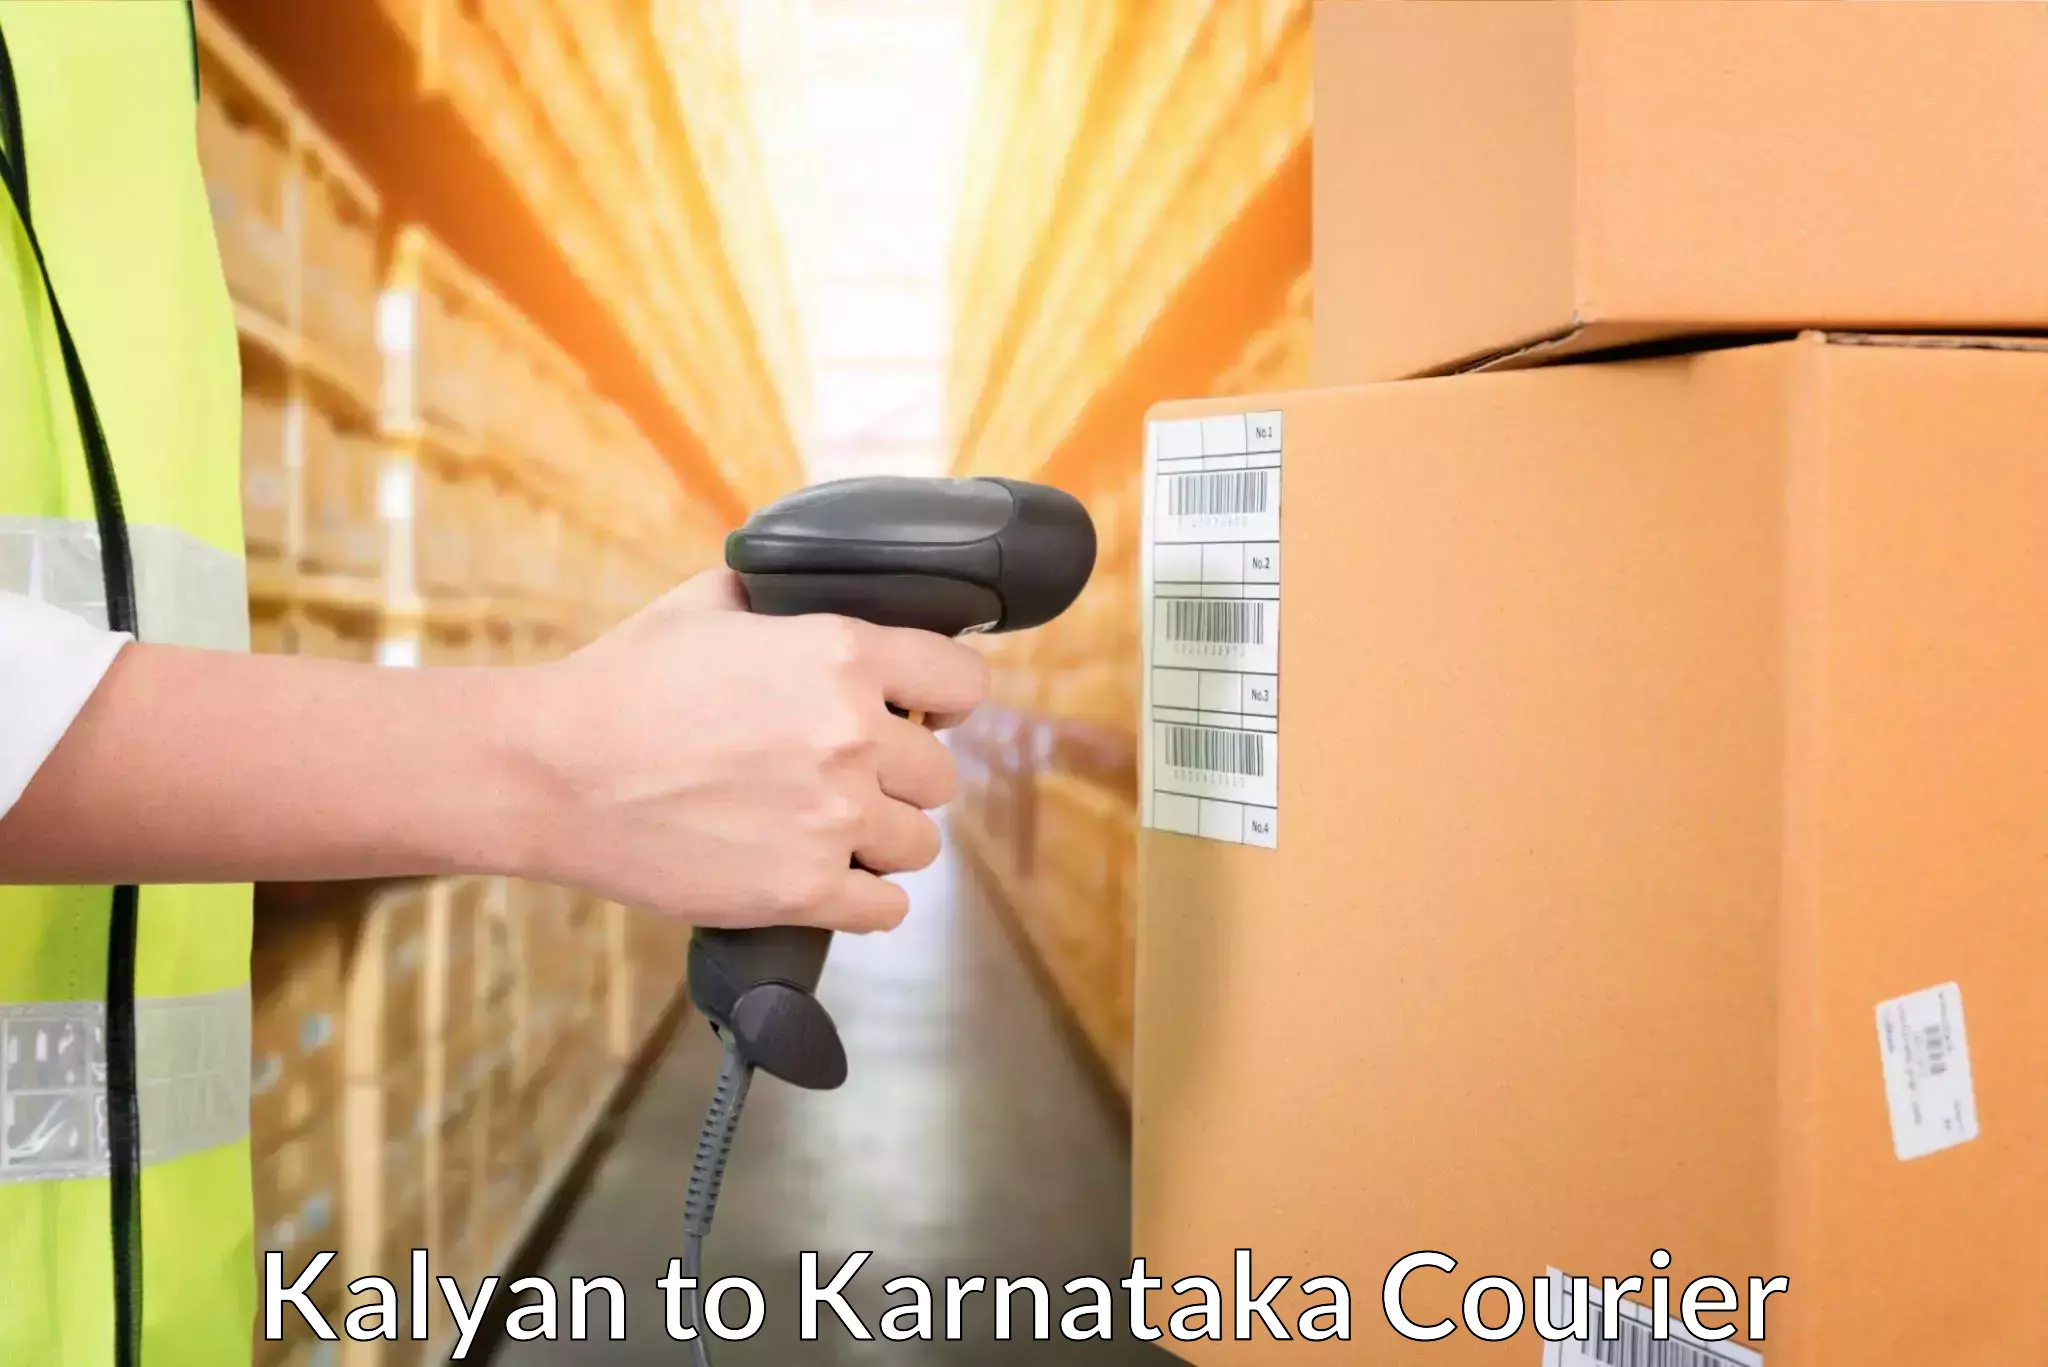 Cross-border shipping Kalyan to Pavagada